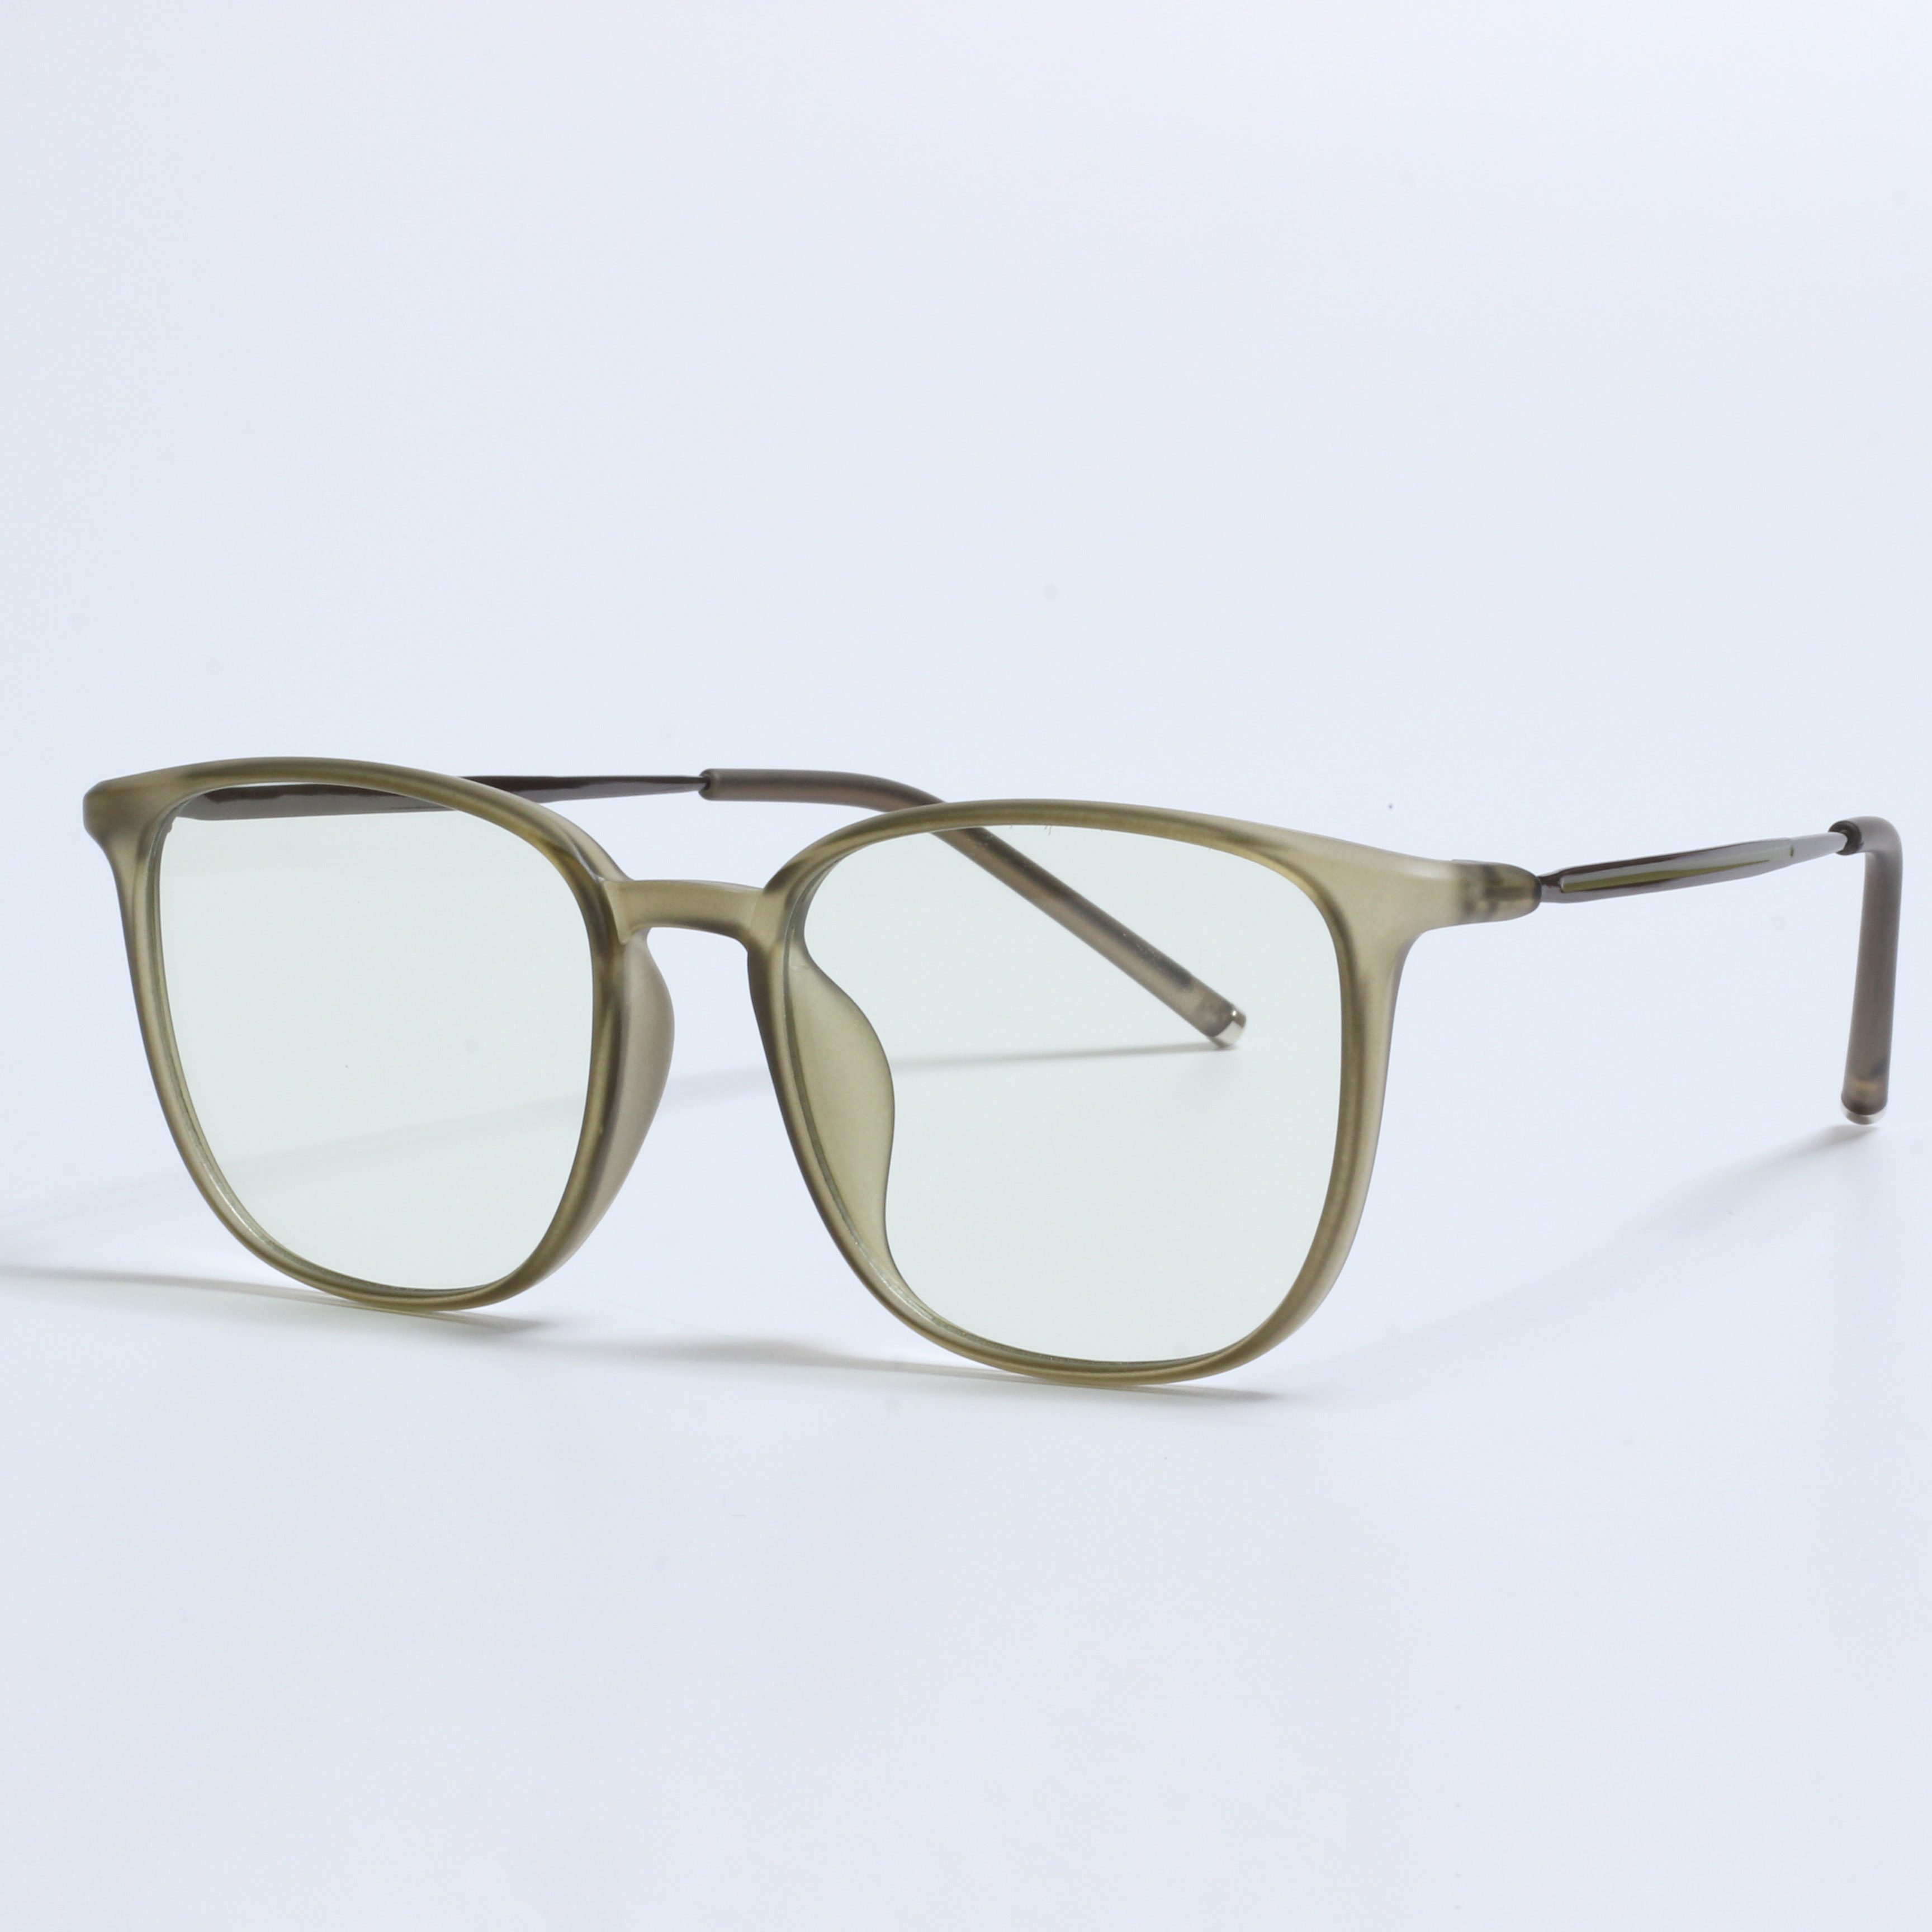 Kacamata resep desainer retro lunette anti lumiere (5)